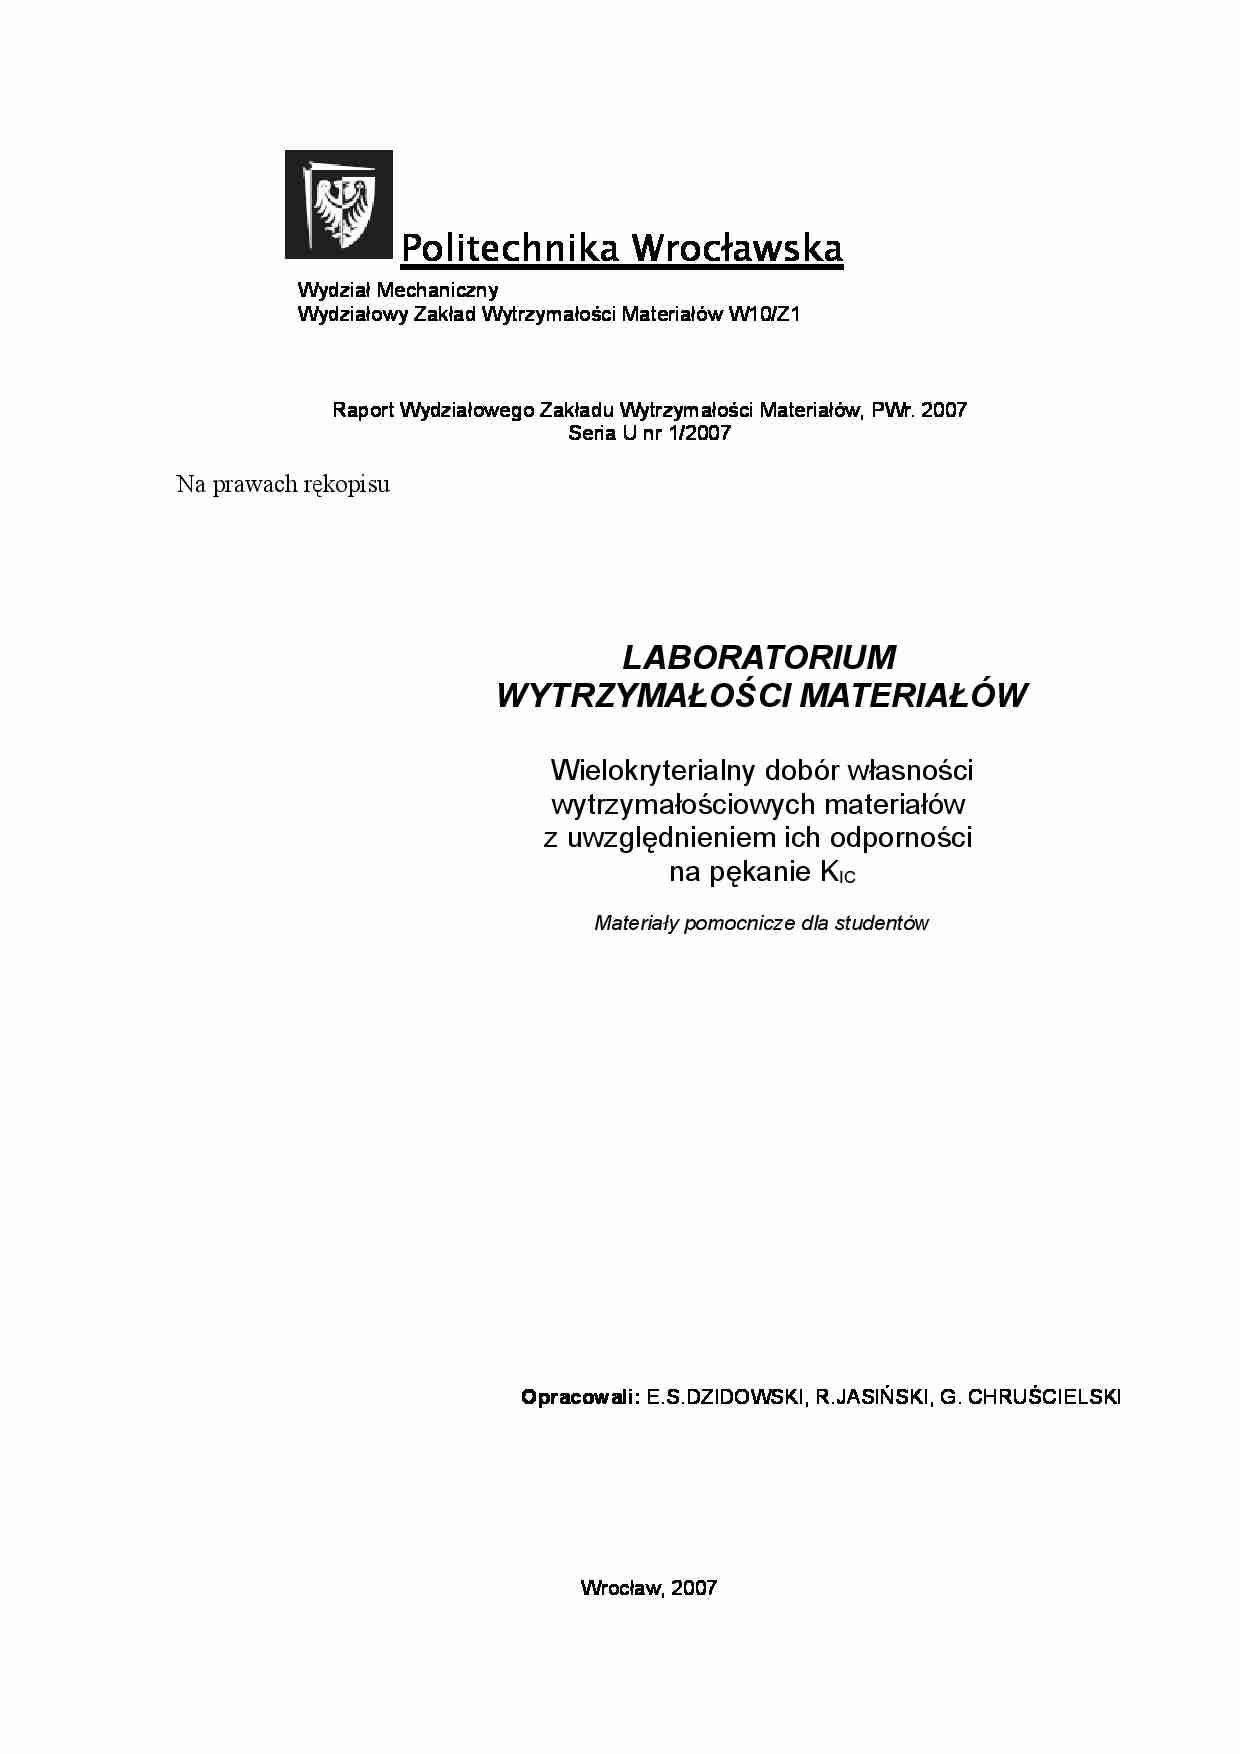 Wytrzymałość materiałów - laboratorium - strona 1